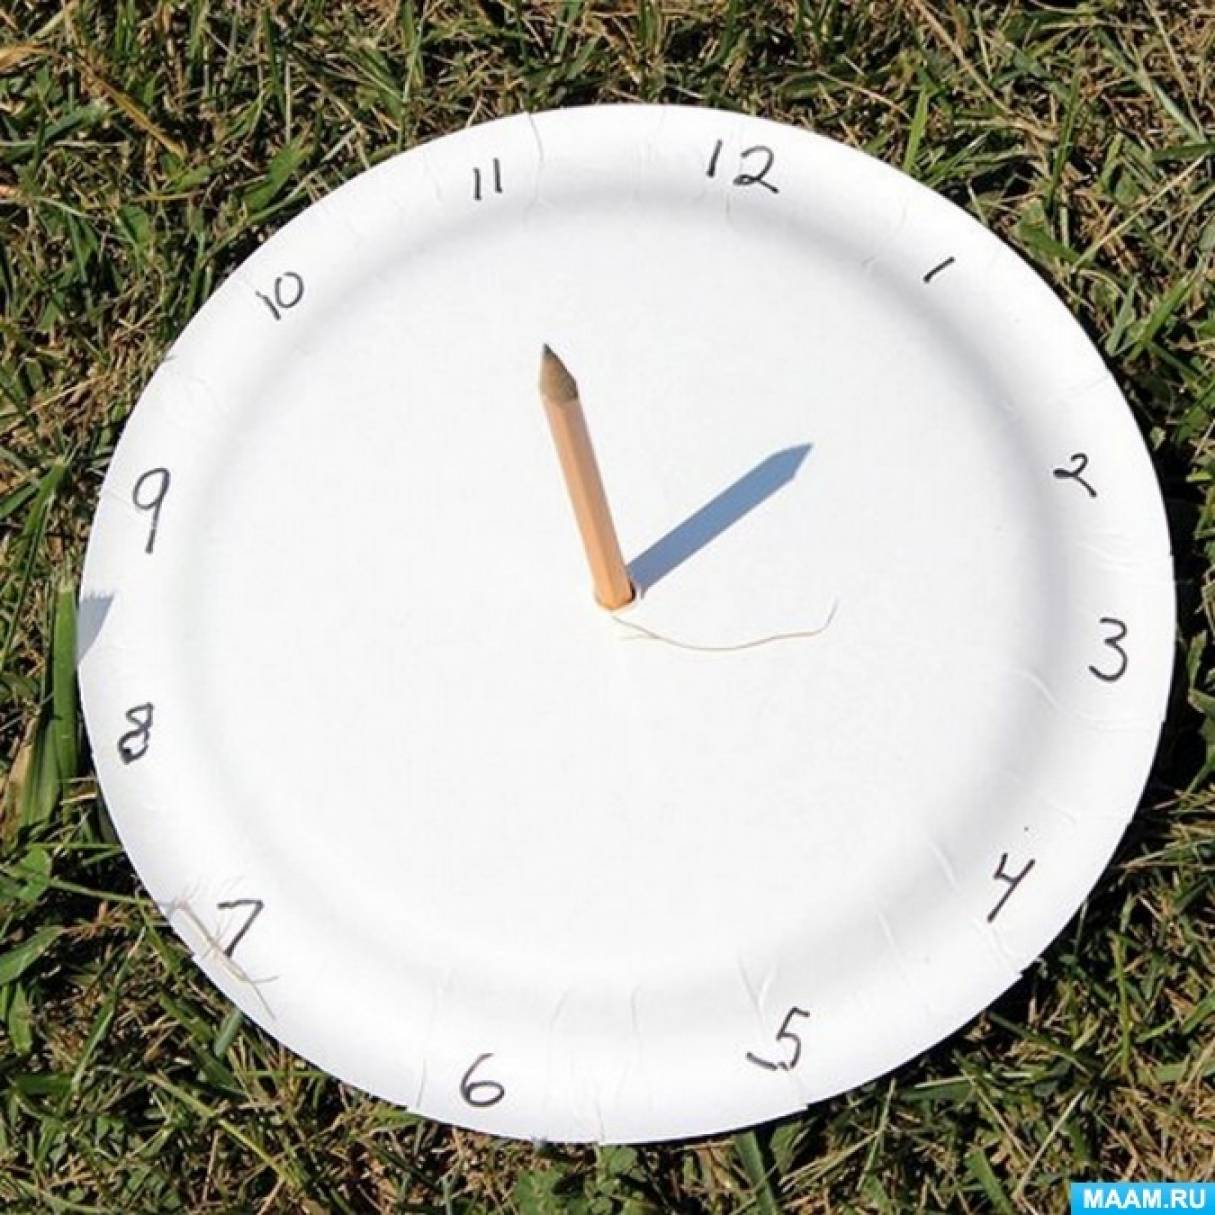 Компас из картона. Макет солнечных часов. Солнечные часы из тарелки. Солнечные часы для сада. Солнечные часы для детей.